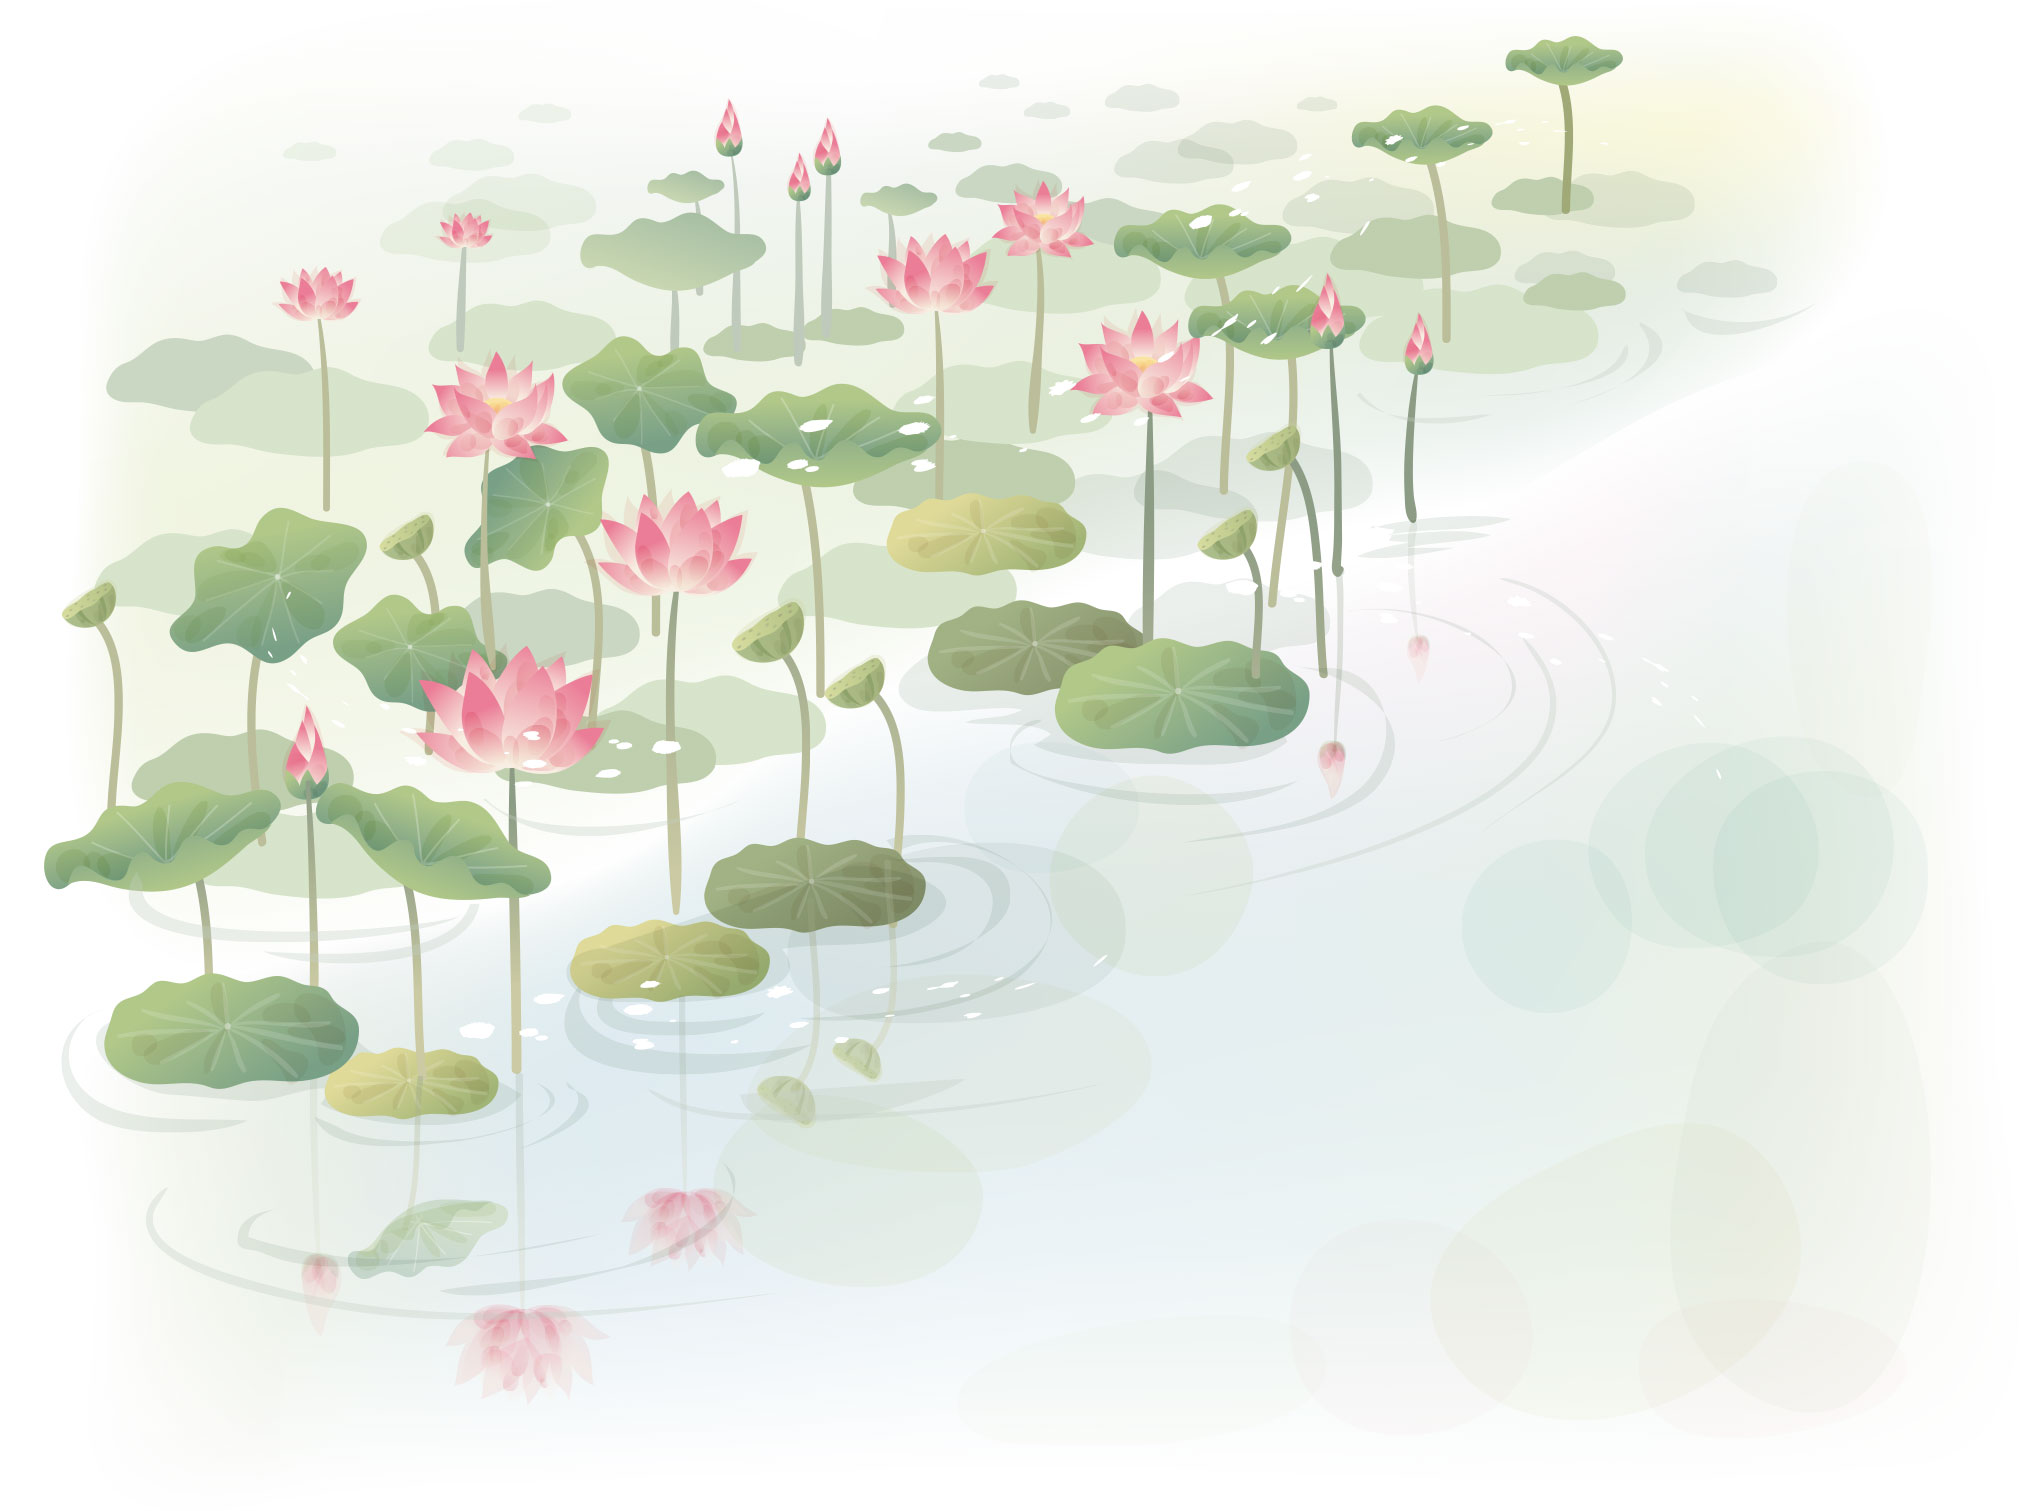 夏のイラストno 305 蓮の花 水彩画風 無料のフリー素材集 花鳥風月